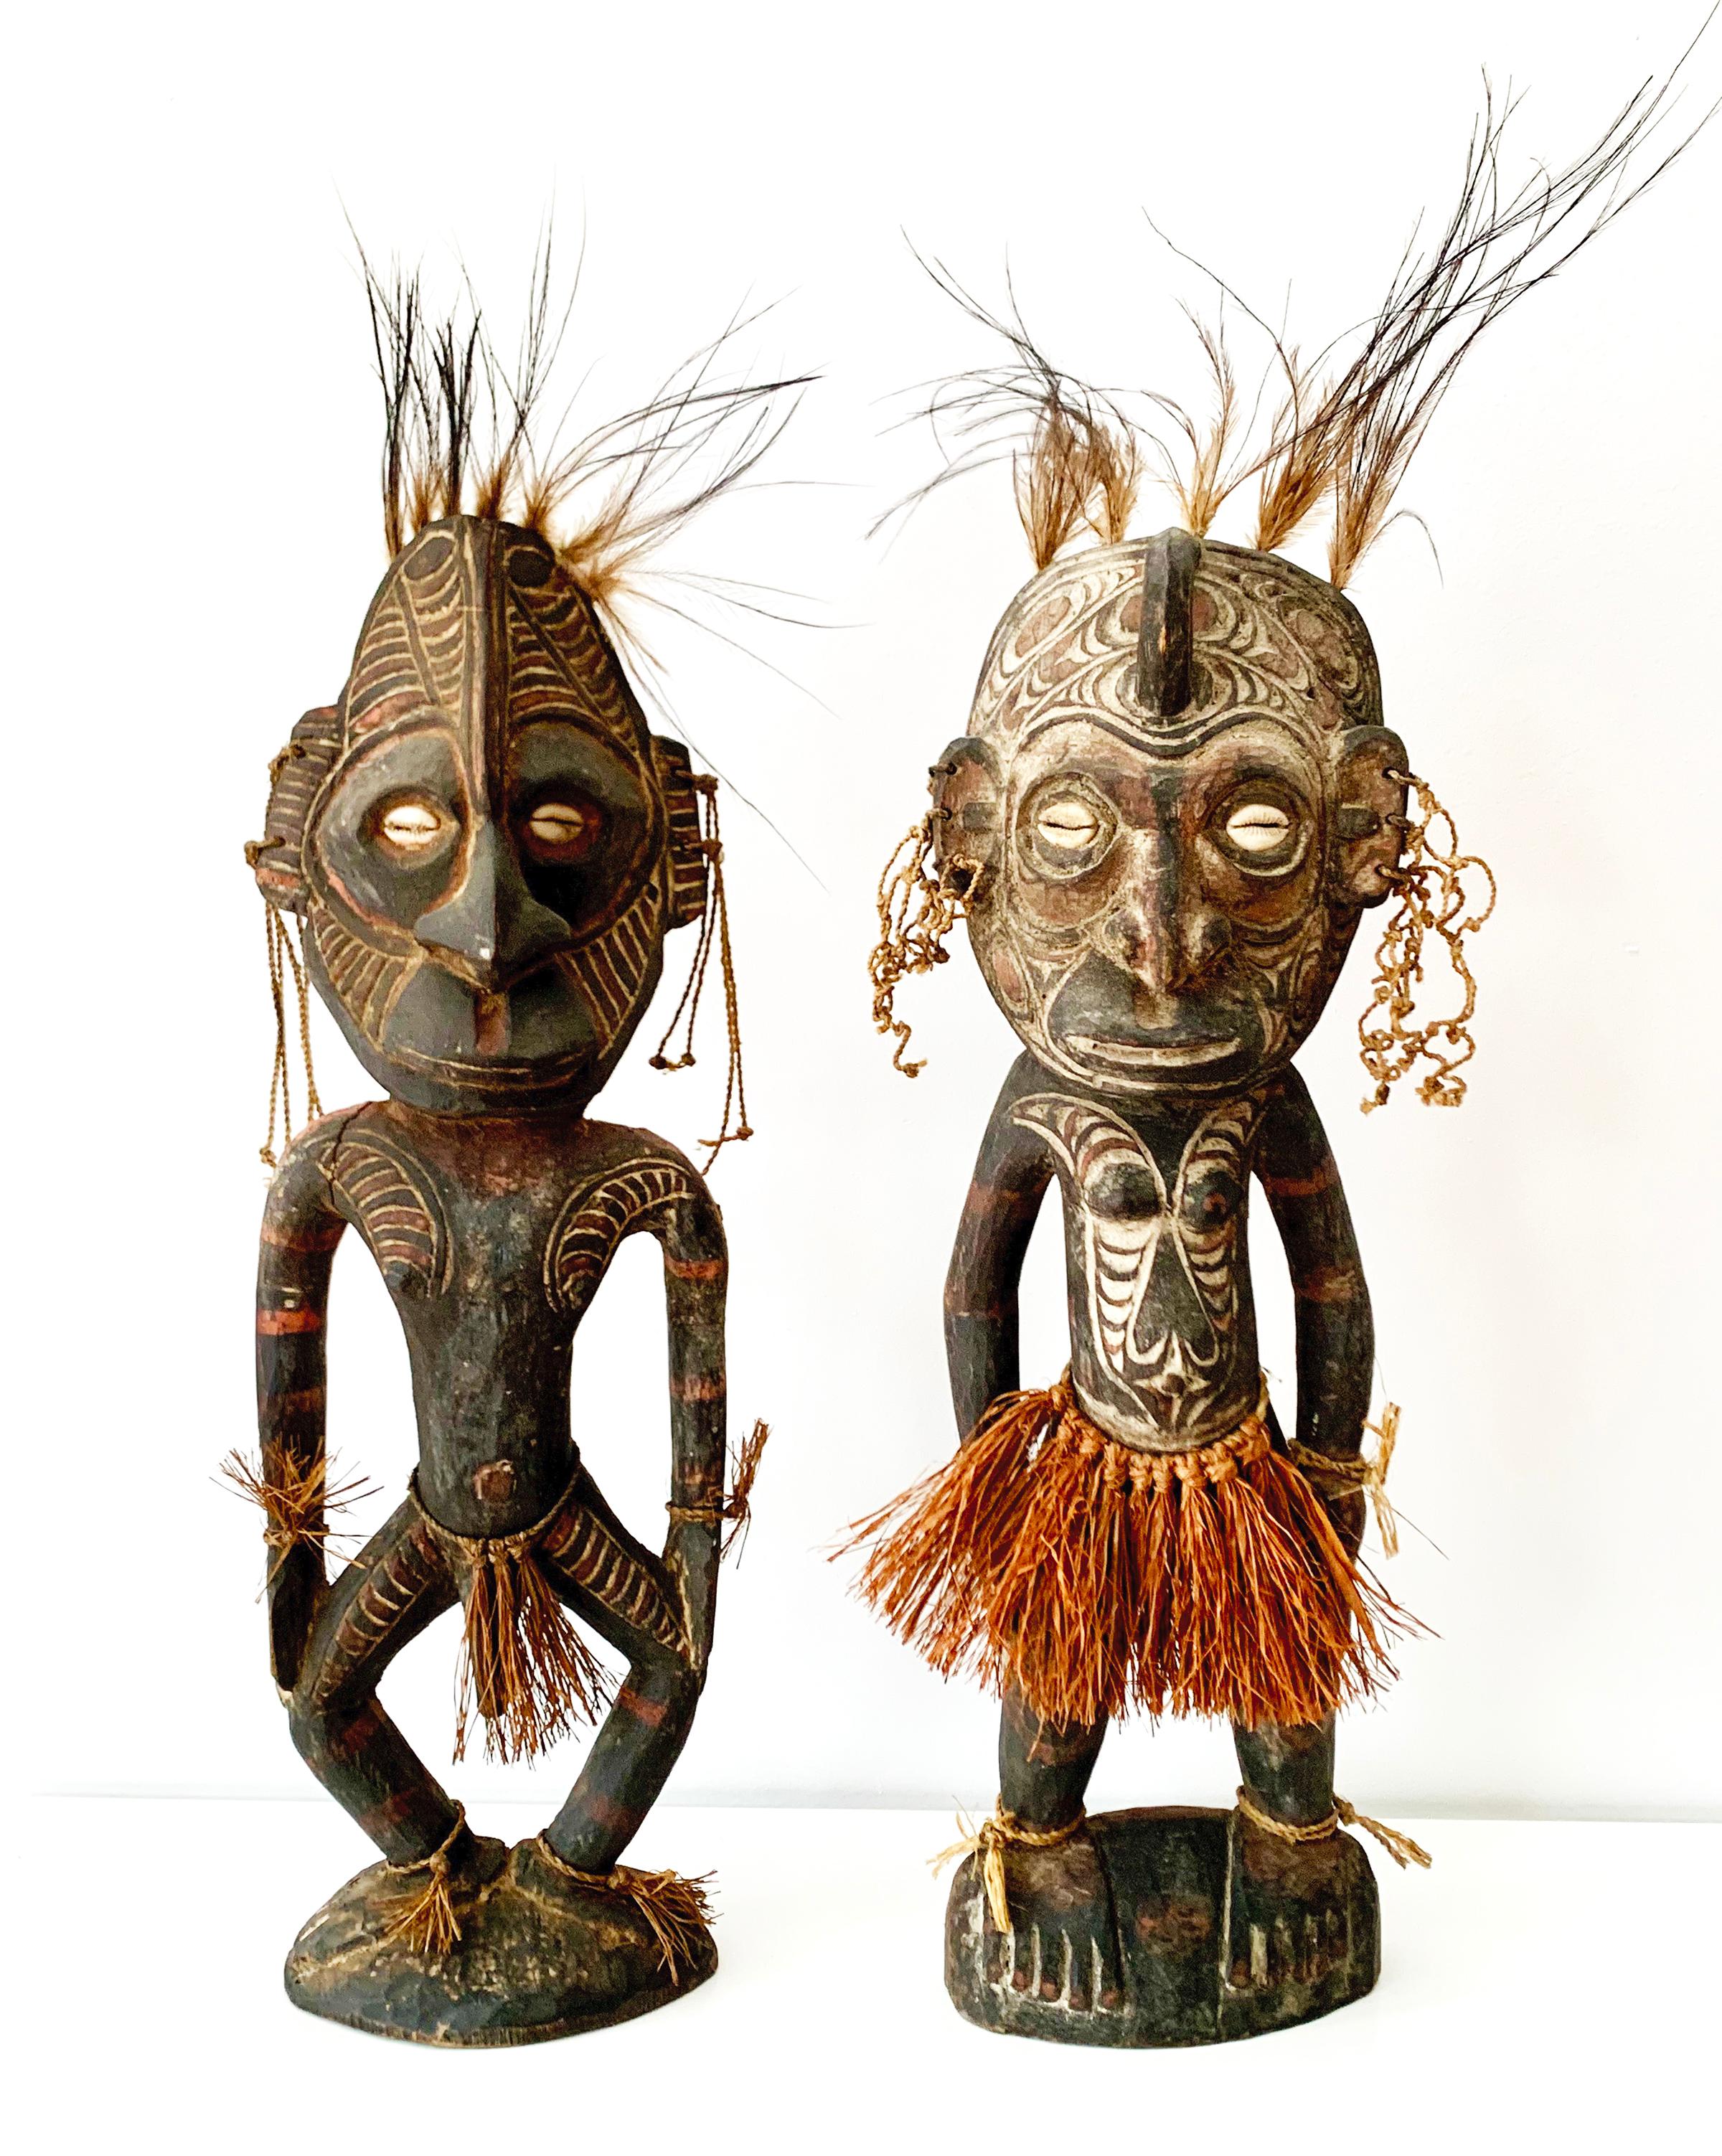 Unknown Figurative Sculpture - Male and Female Ancestor Spirit Figures, Sepik River, Papua New Guinea 